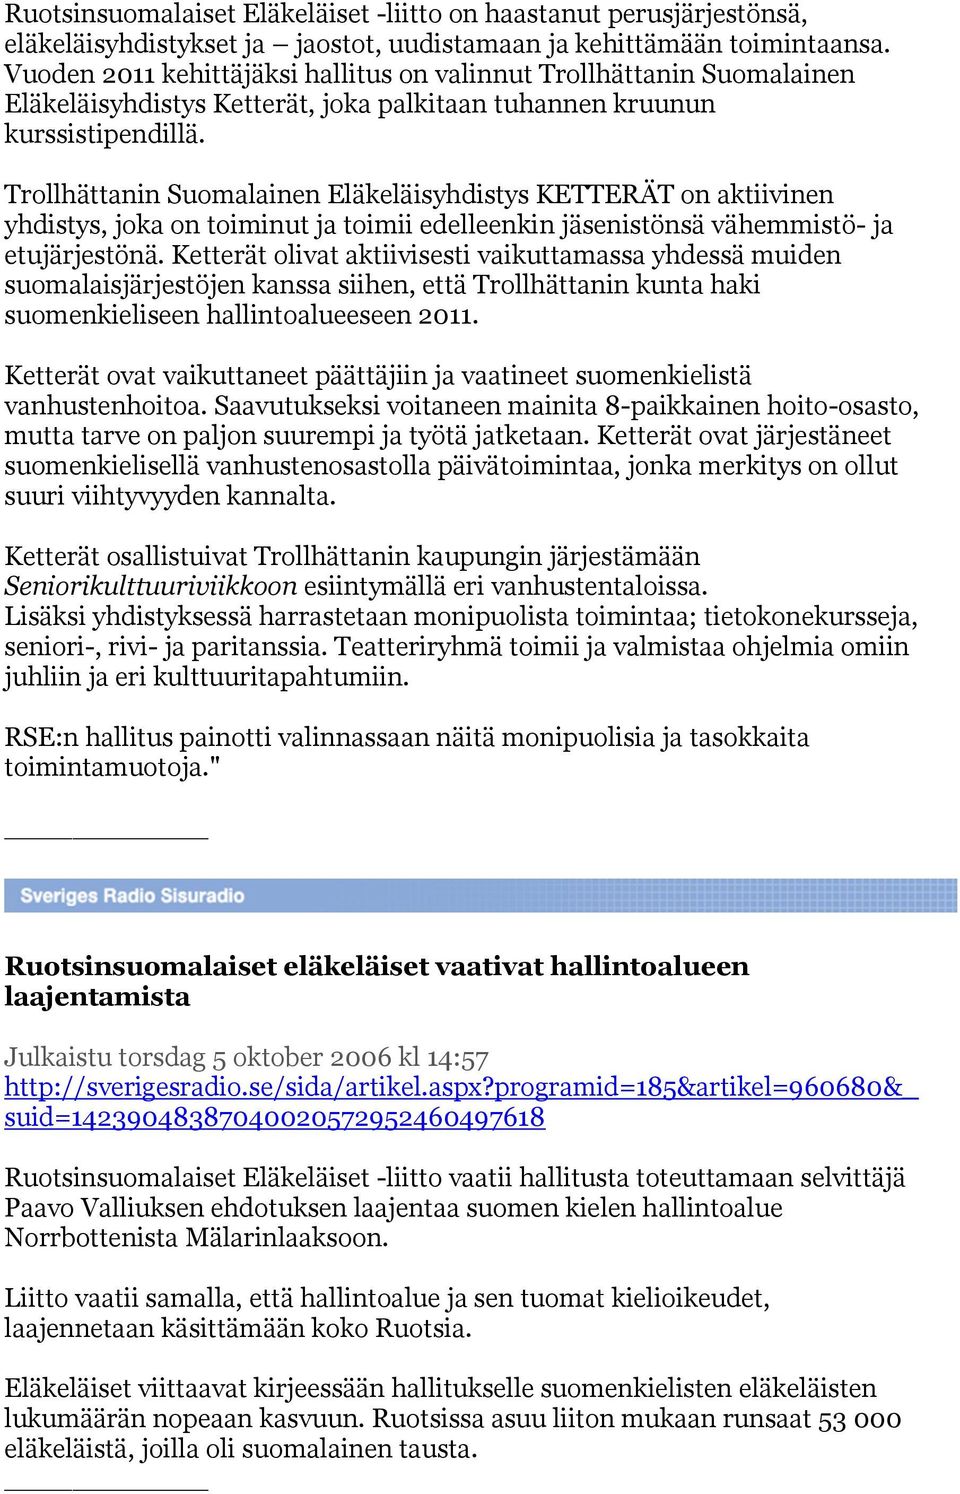 Trollhättanin Suomalainen Eläkeläisyhdistys KETTERÄT on aktiivinen yhdistys, joka on toiminut ja toimii edelleenkin jäsenistönsä vähemmistö- ja etujärjestönä.